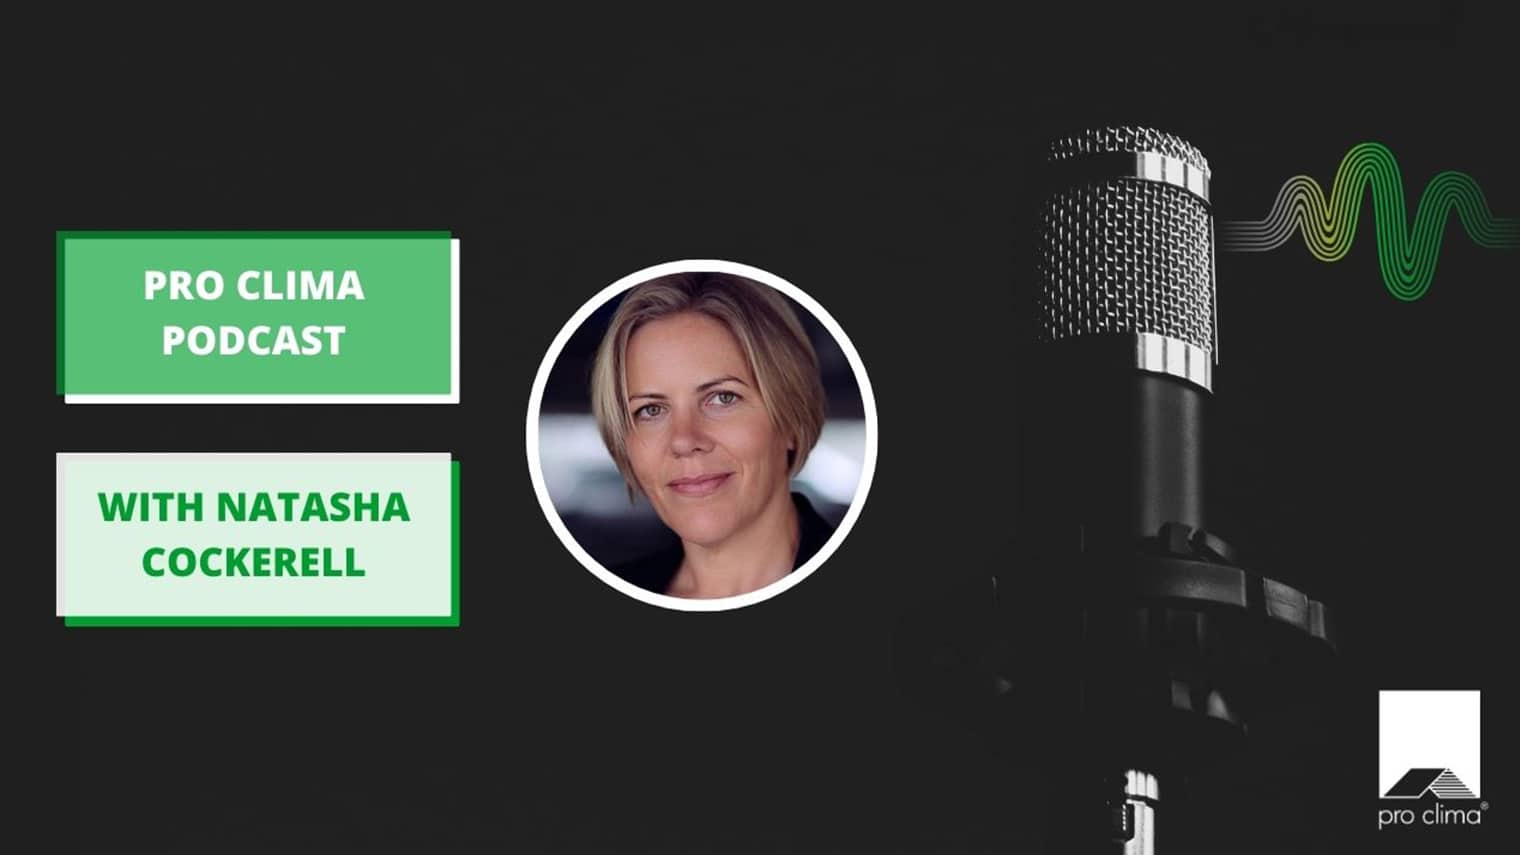 Natasha Cockerell talks to Pro Clima podcast